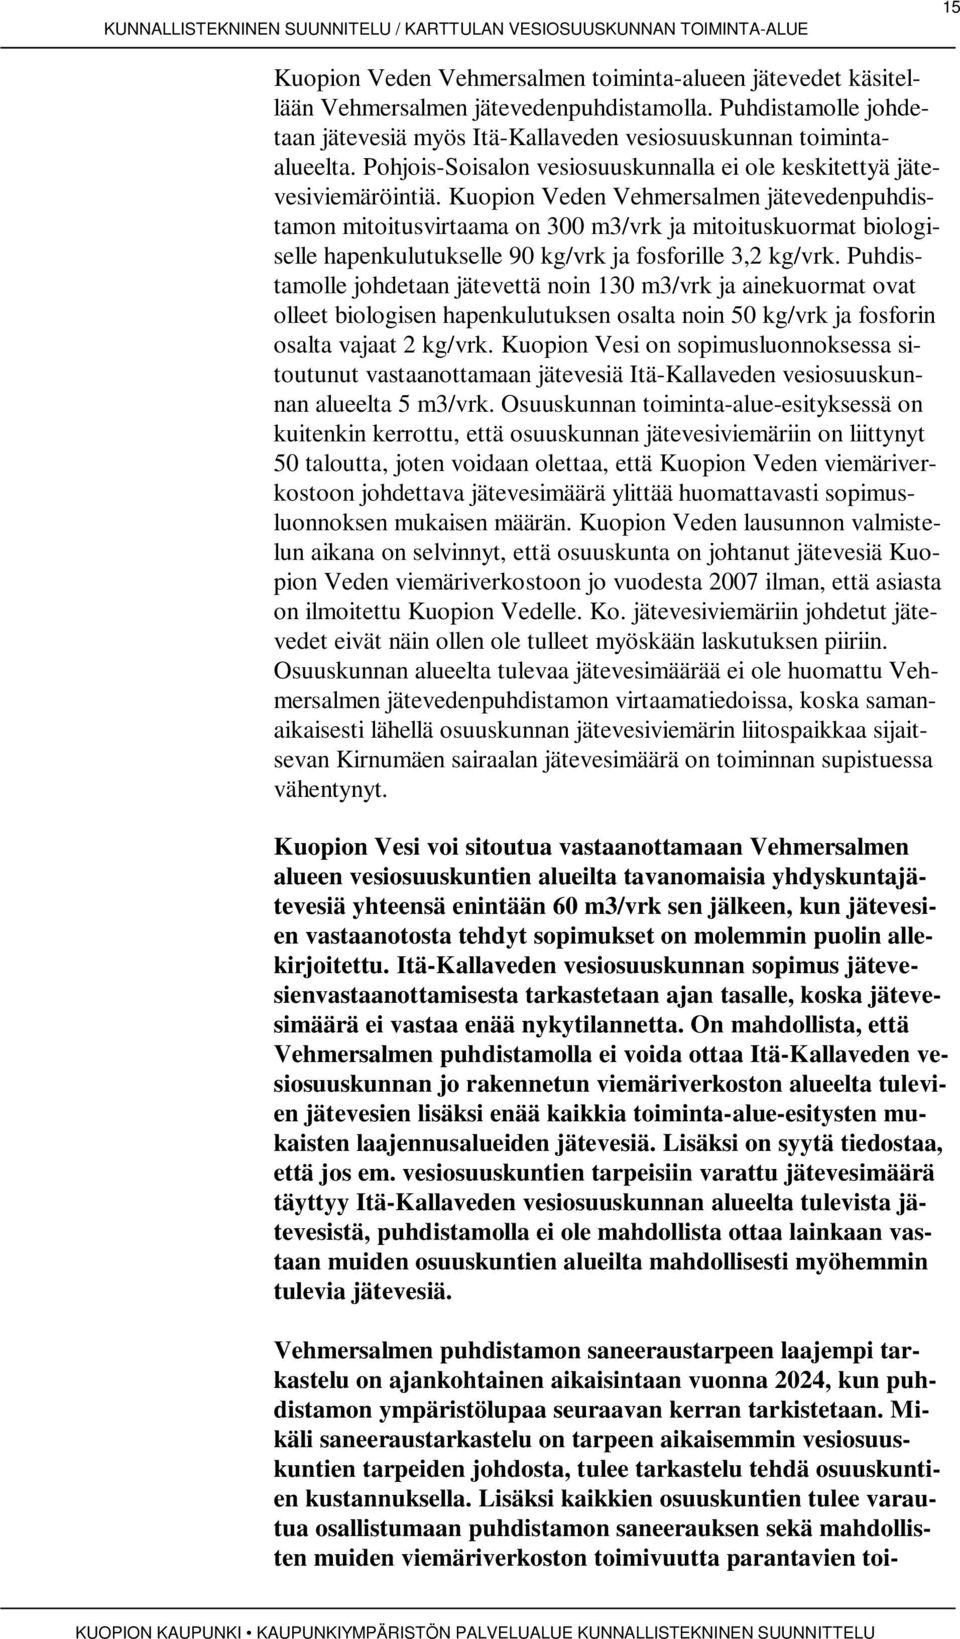 Kuopion Veden Vehmersalmen jätevedenpuhdistamon mitoitusvirtaama on 300 m3/vrk ja mitoituskuormat biologiselle hapenkulutukselle 90 kg/vrk ja fosforille 3,2 kg/vrk.